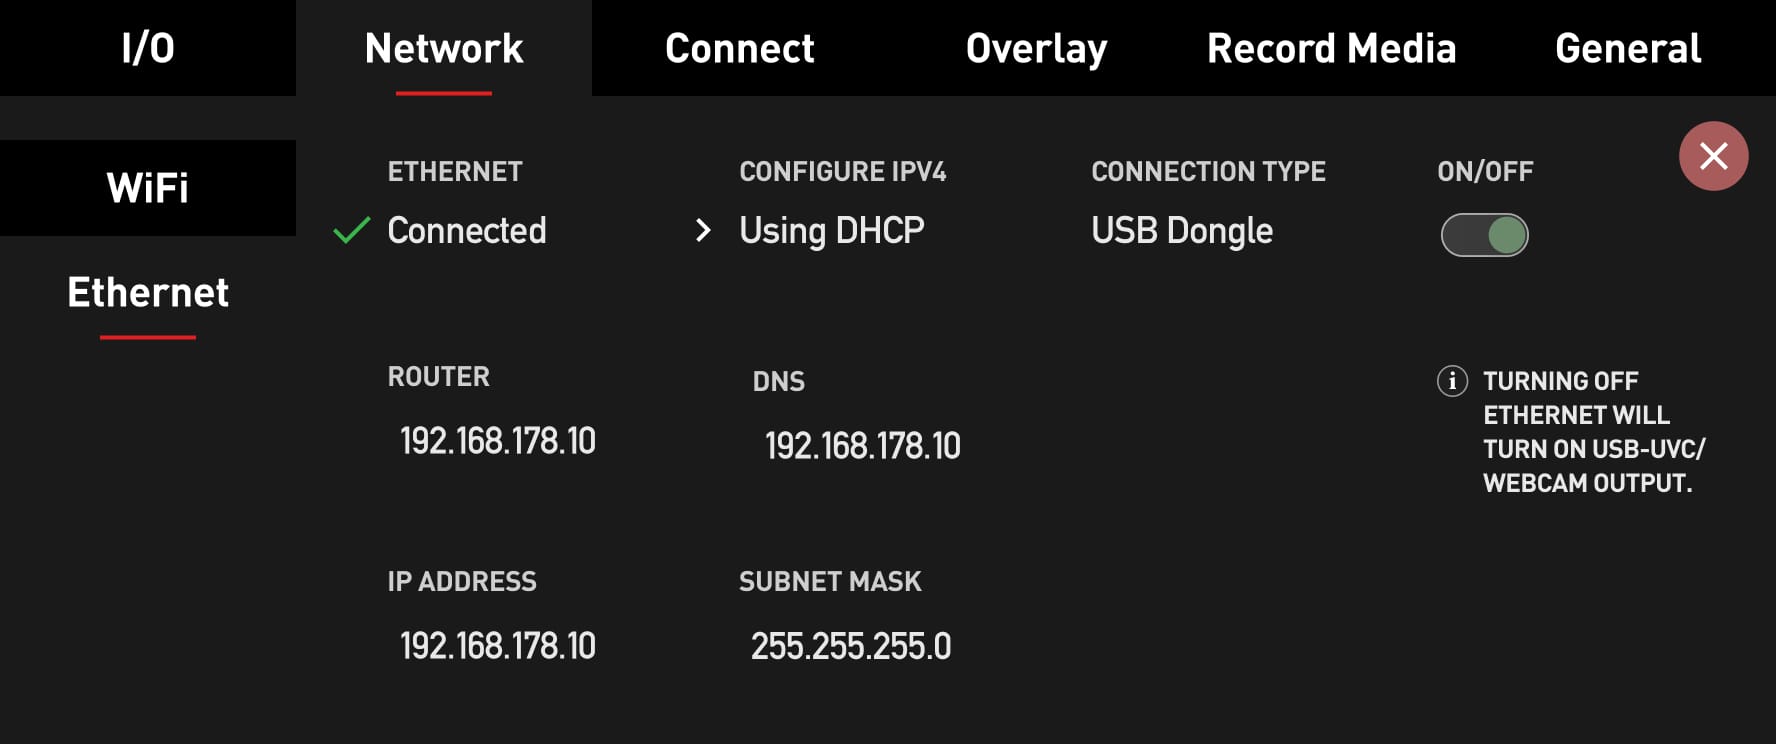 Ethernet-DHCP-ON.jpg